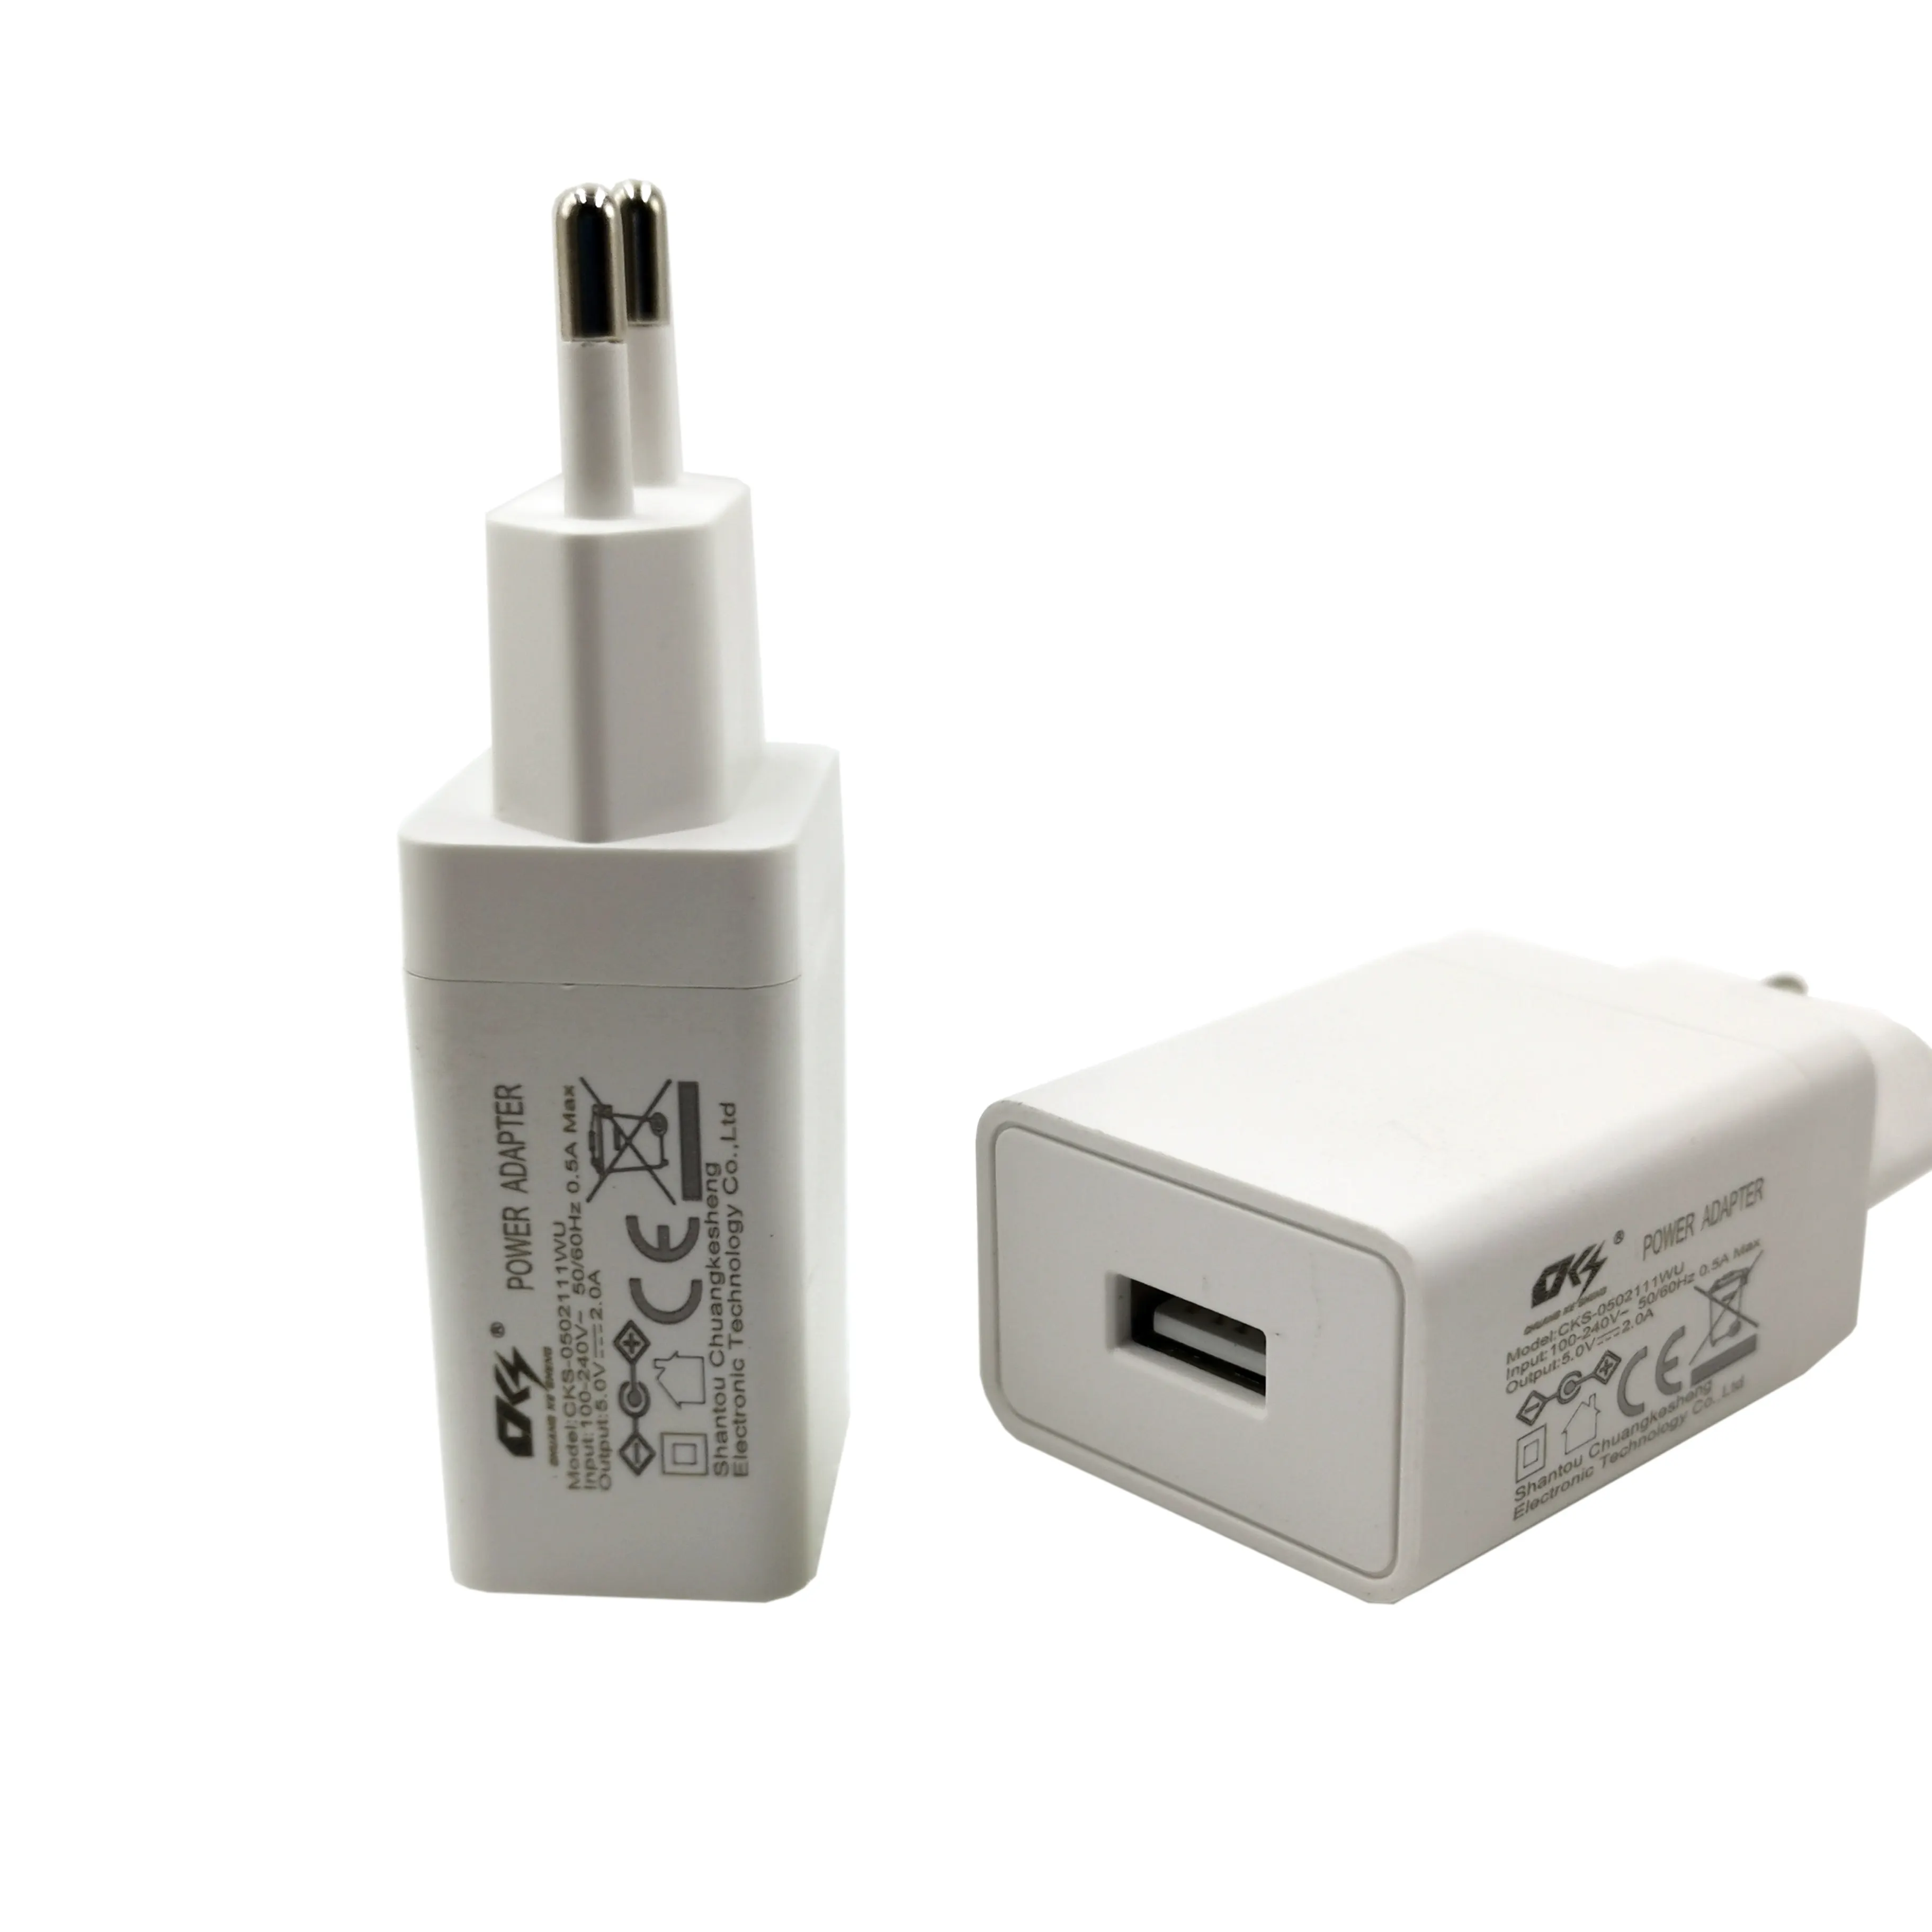 Usb Charger USB Usb da 5v 2a adattatore AC DC telefono accesorios para telefonos caricabatteria da 5 v2a adattatore USB